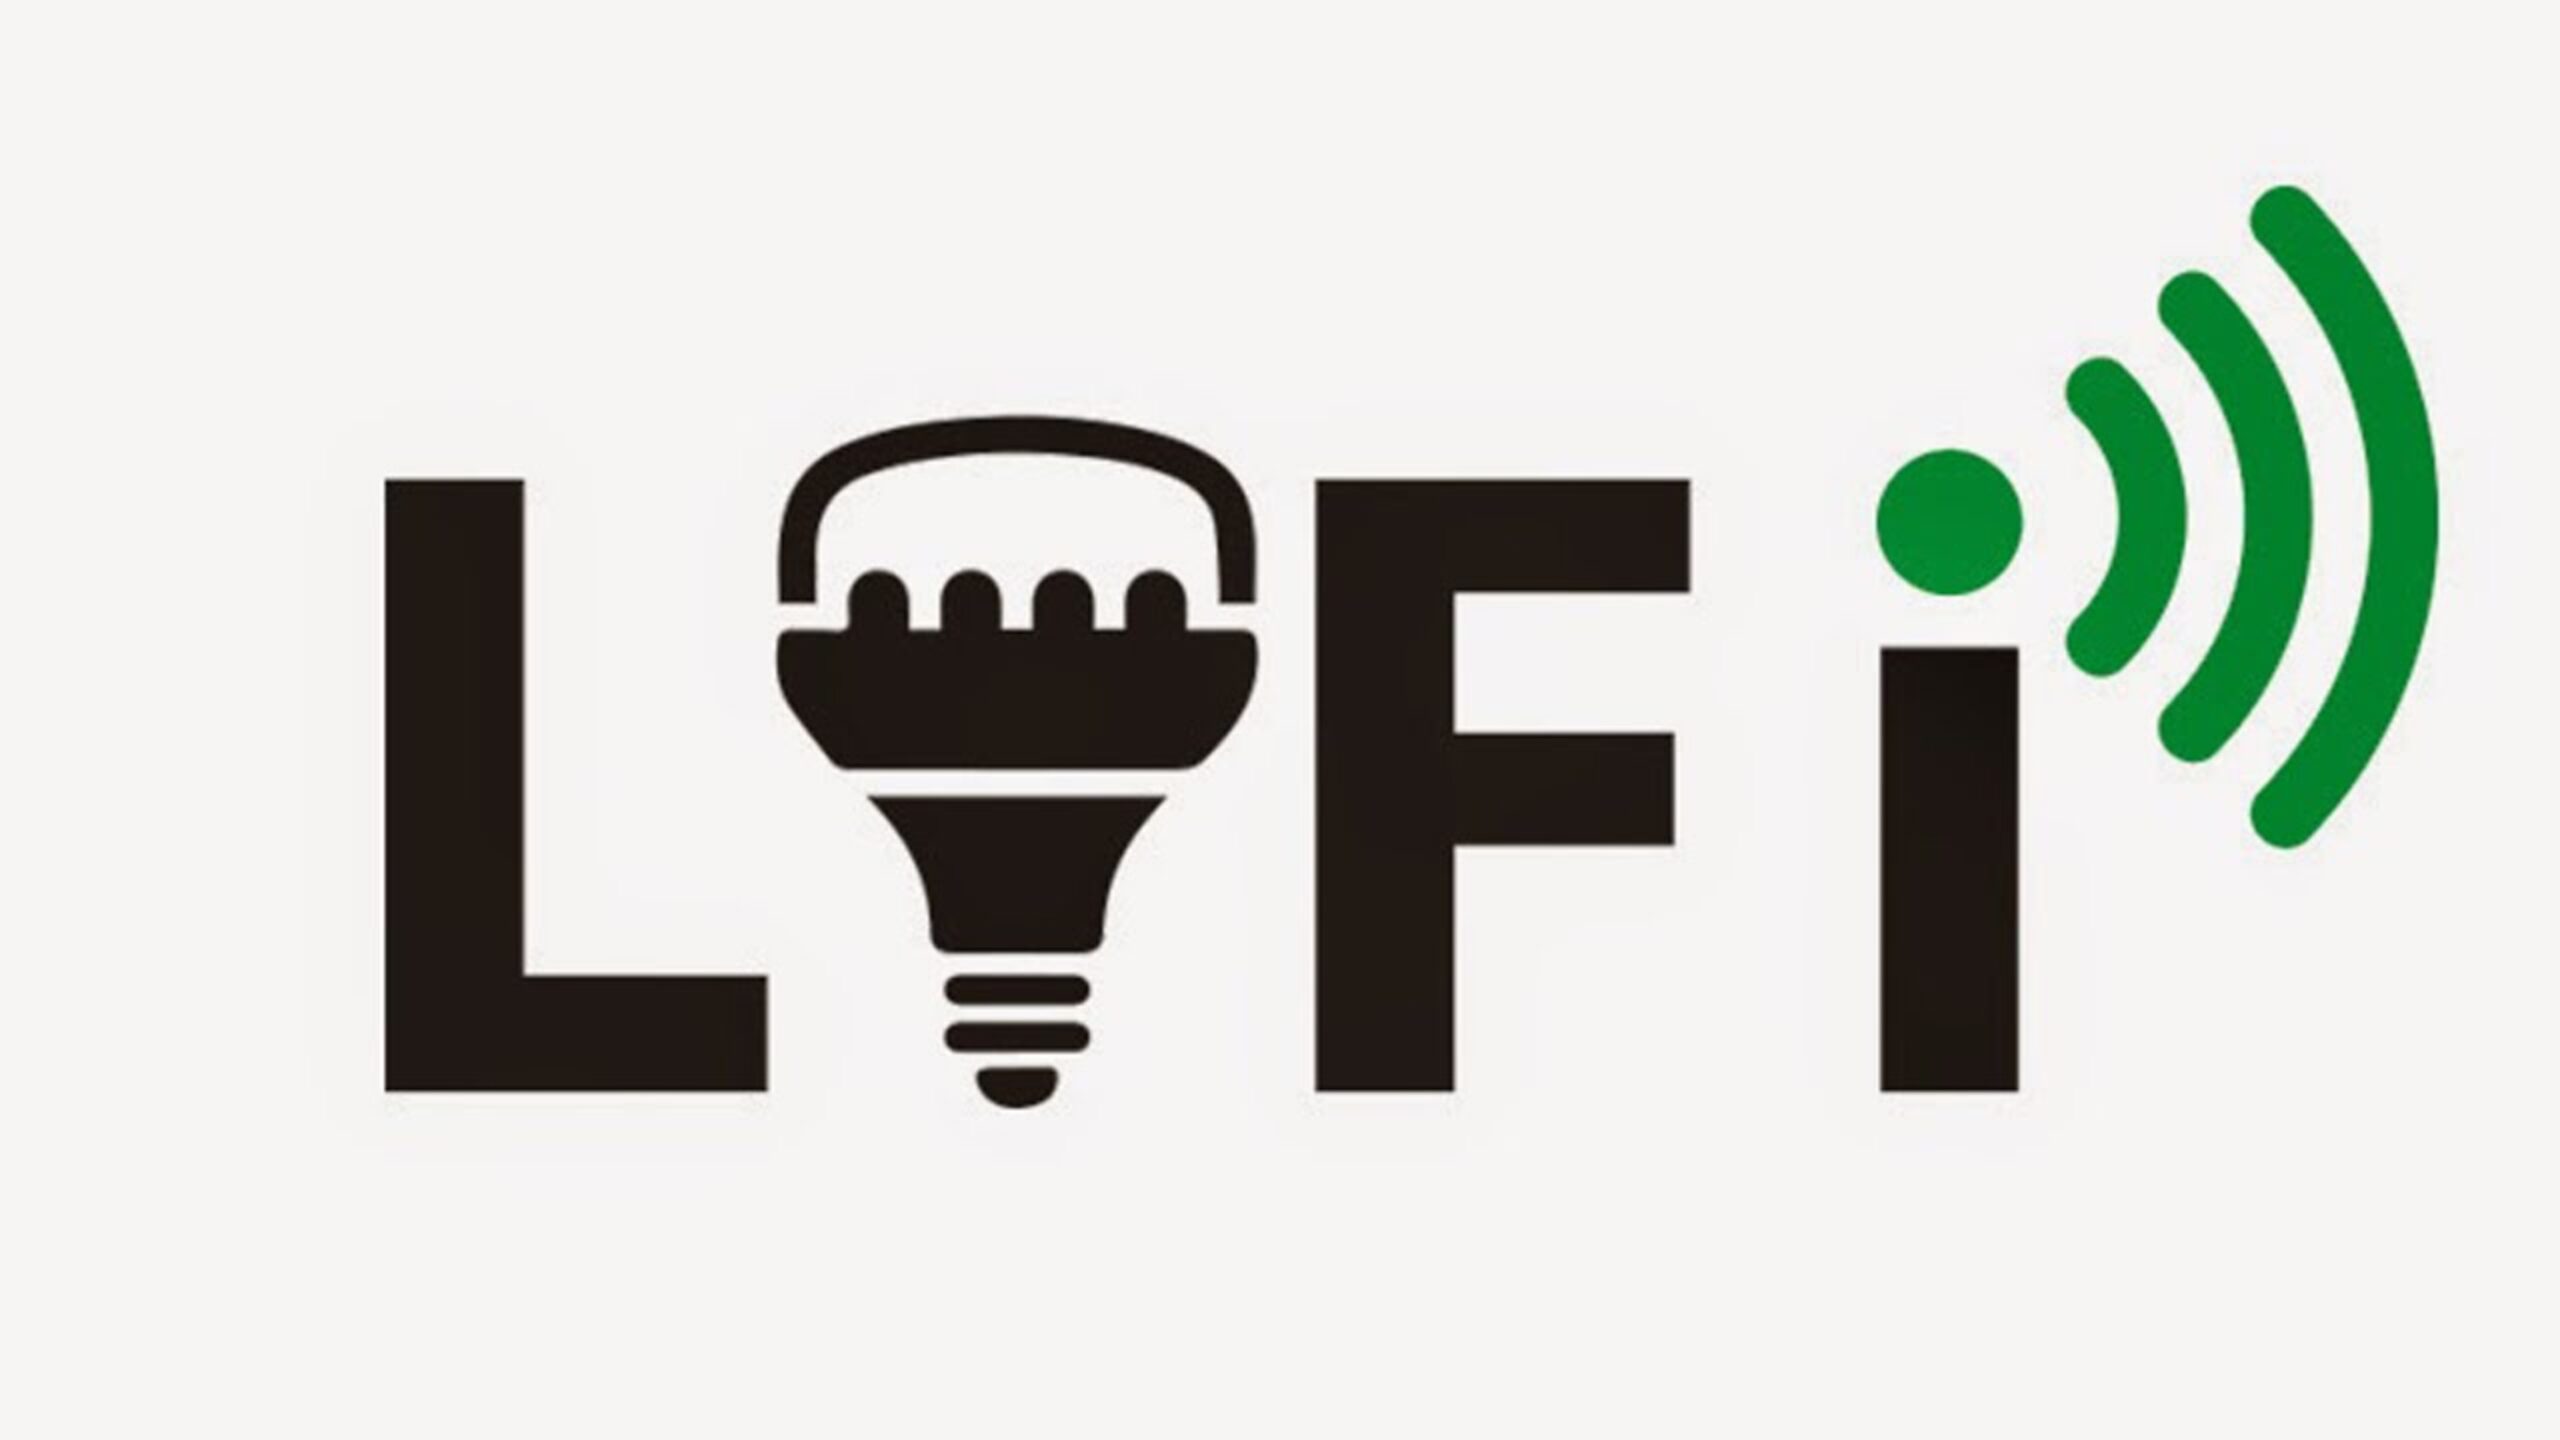 lifi-deve-substituir-as-tecnologias-wifi-e-5g-no-futuro